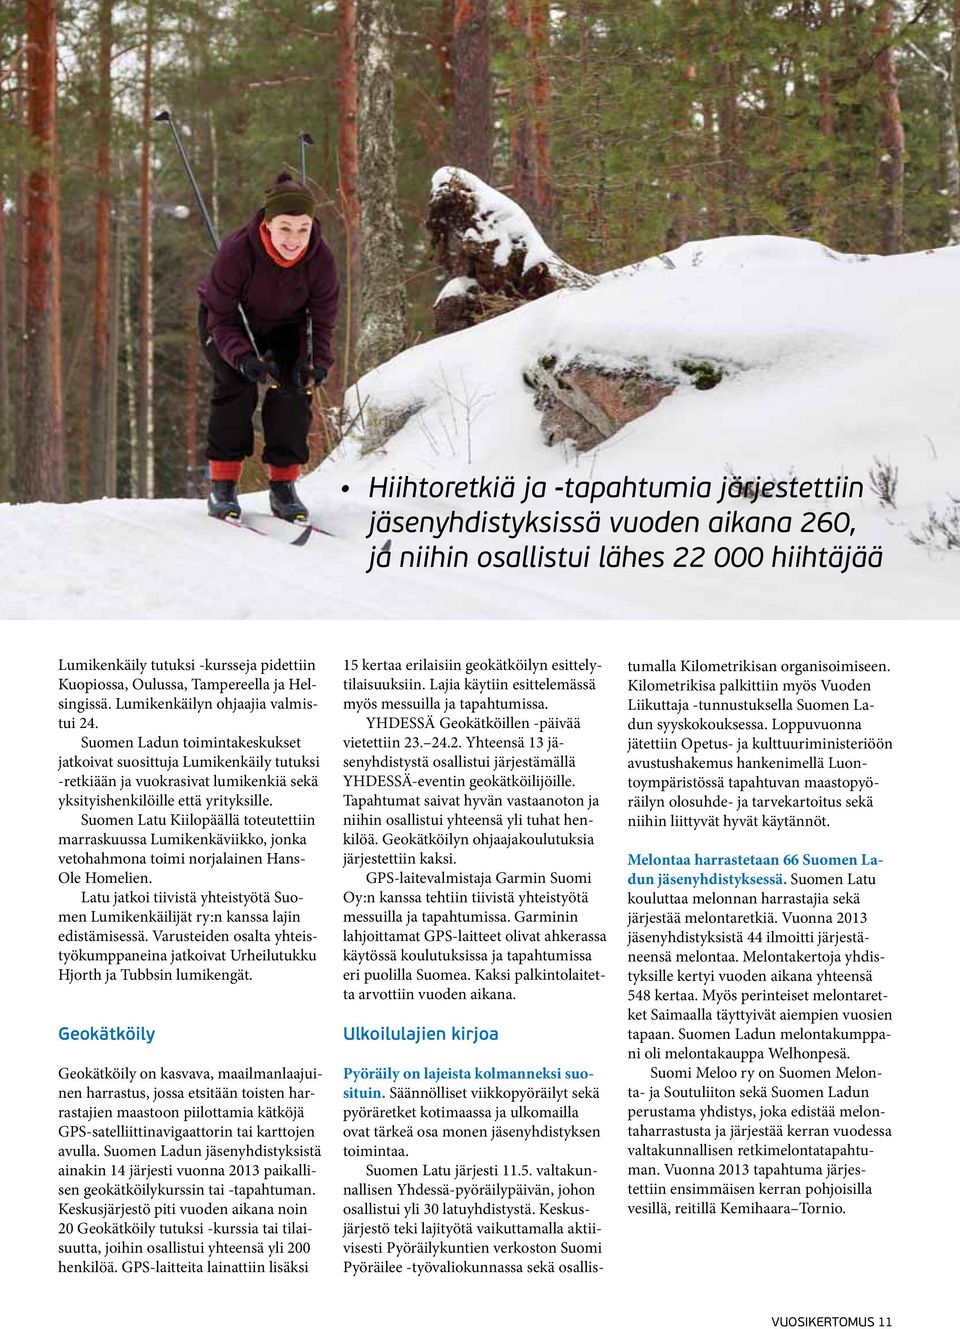 Suomen Ladun toimintakeskukset jatkoivat suosittuja Lumikenkäily tutuksi -retkiään ja vuokrasivat lumikenkiä sekä yksityishenkilöille että yrityksille.